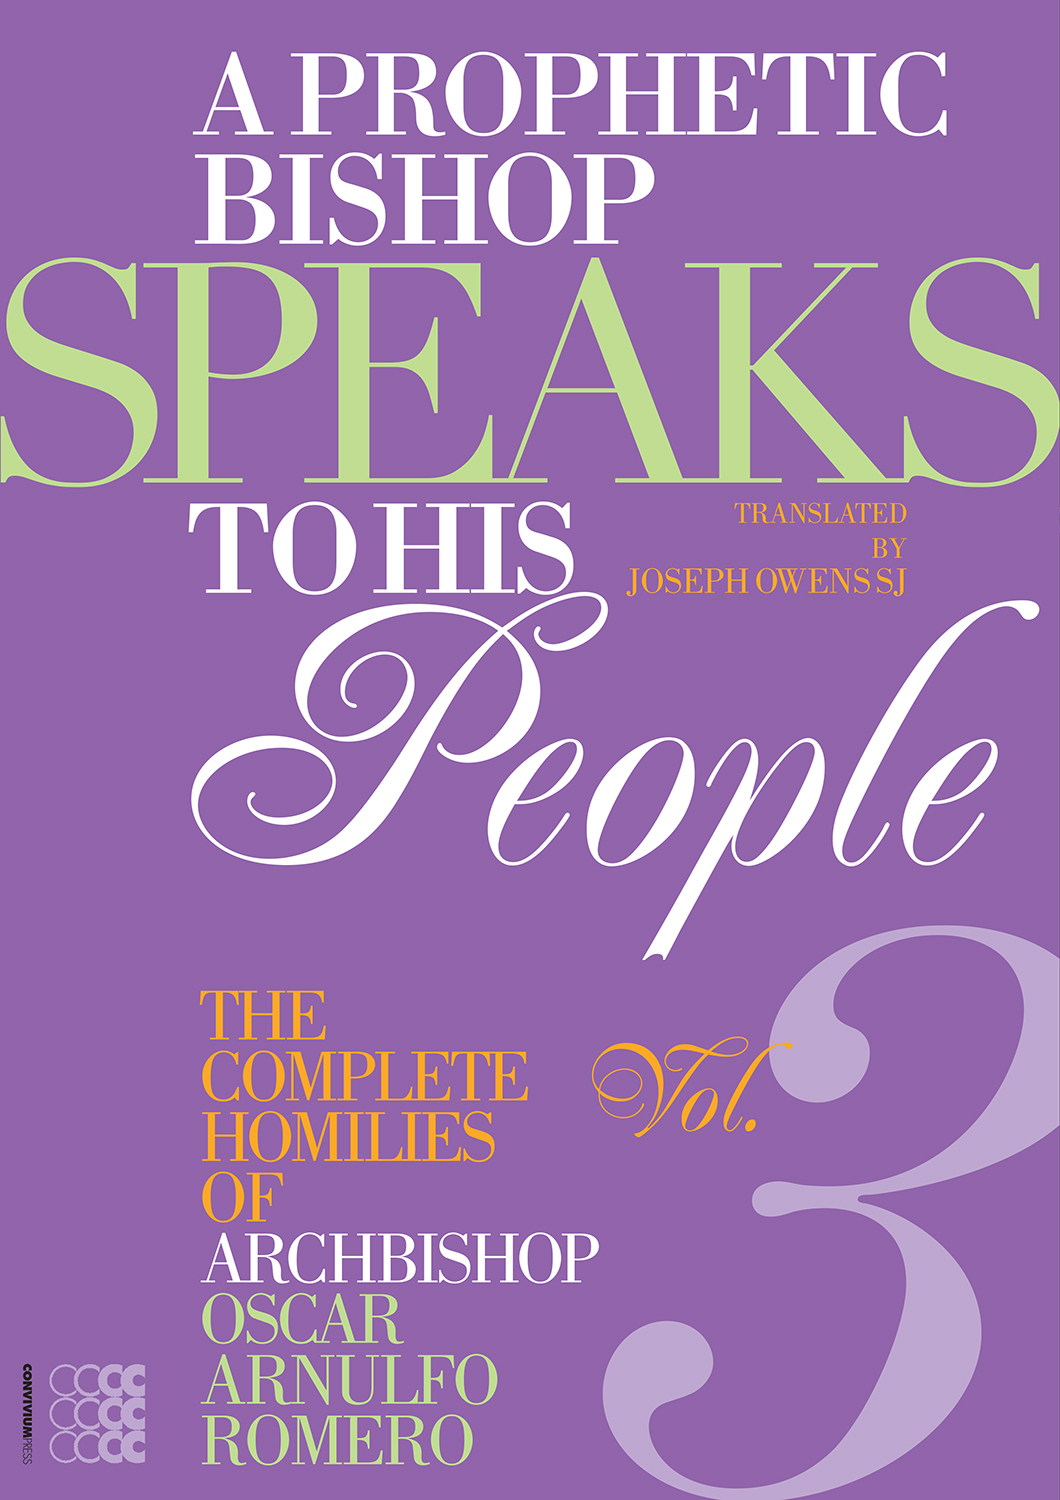 A Prophetic Bishop Speaks to his People 3